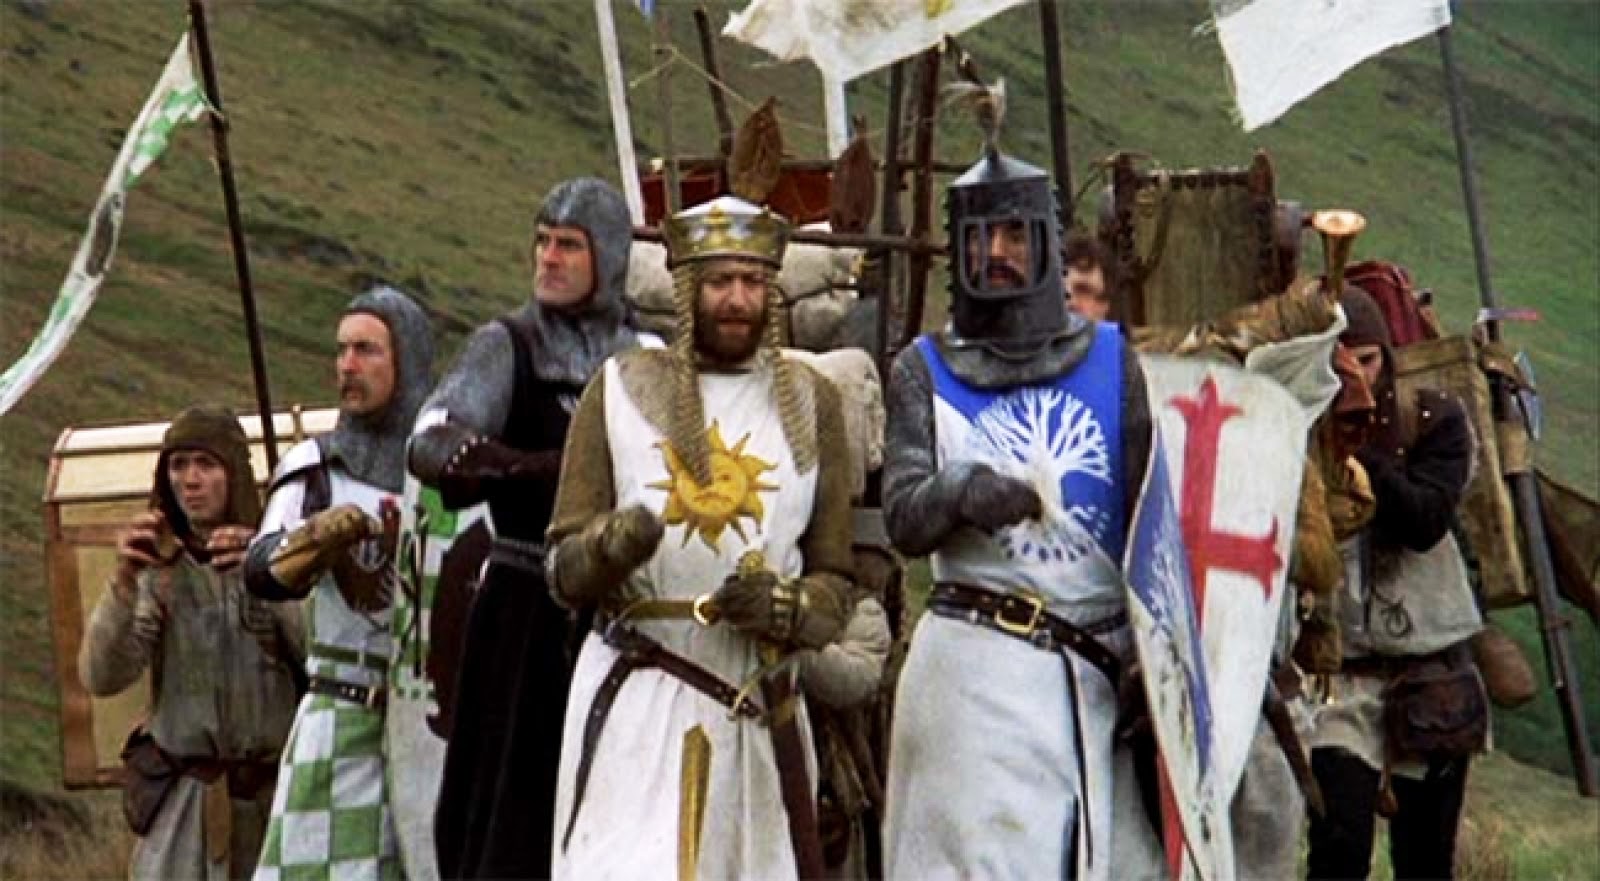 Crítica Retrô: Monty Python em Busca do Cálice Sagrado (1975) / Monty Python and the Holy Grail (1975)